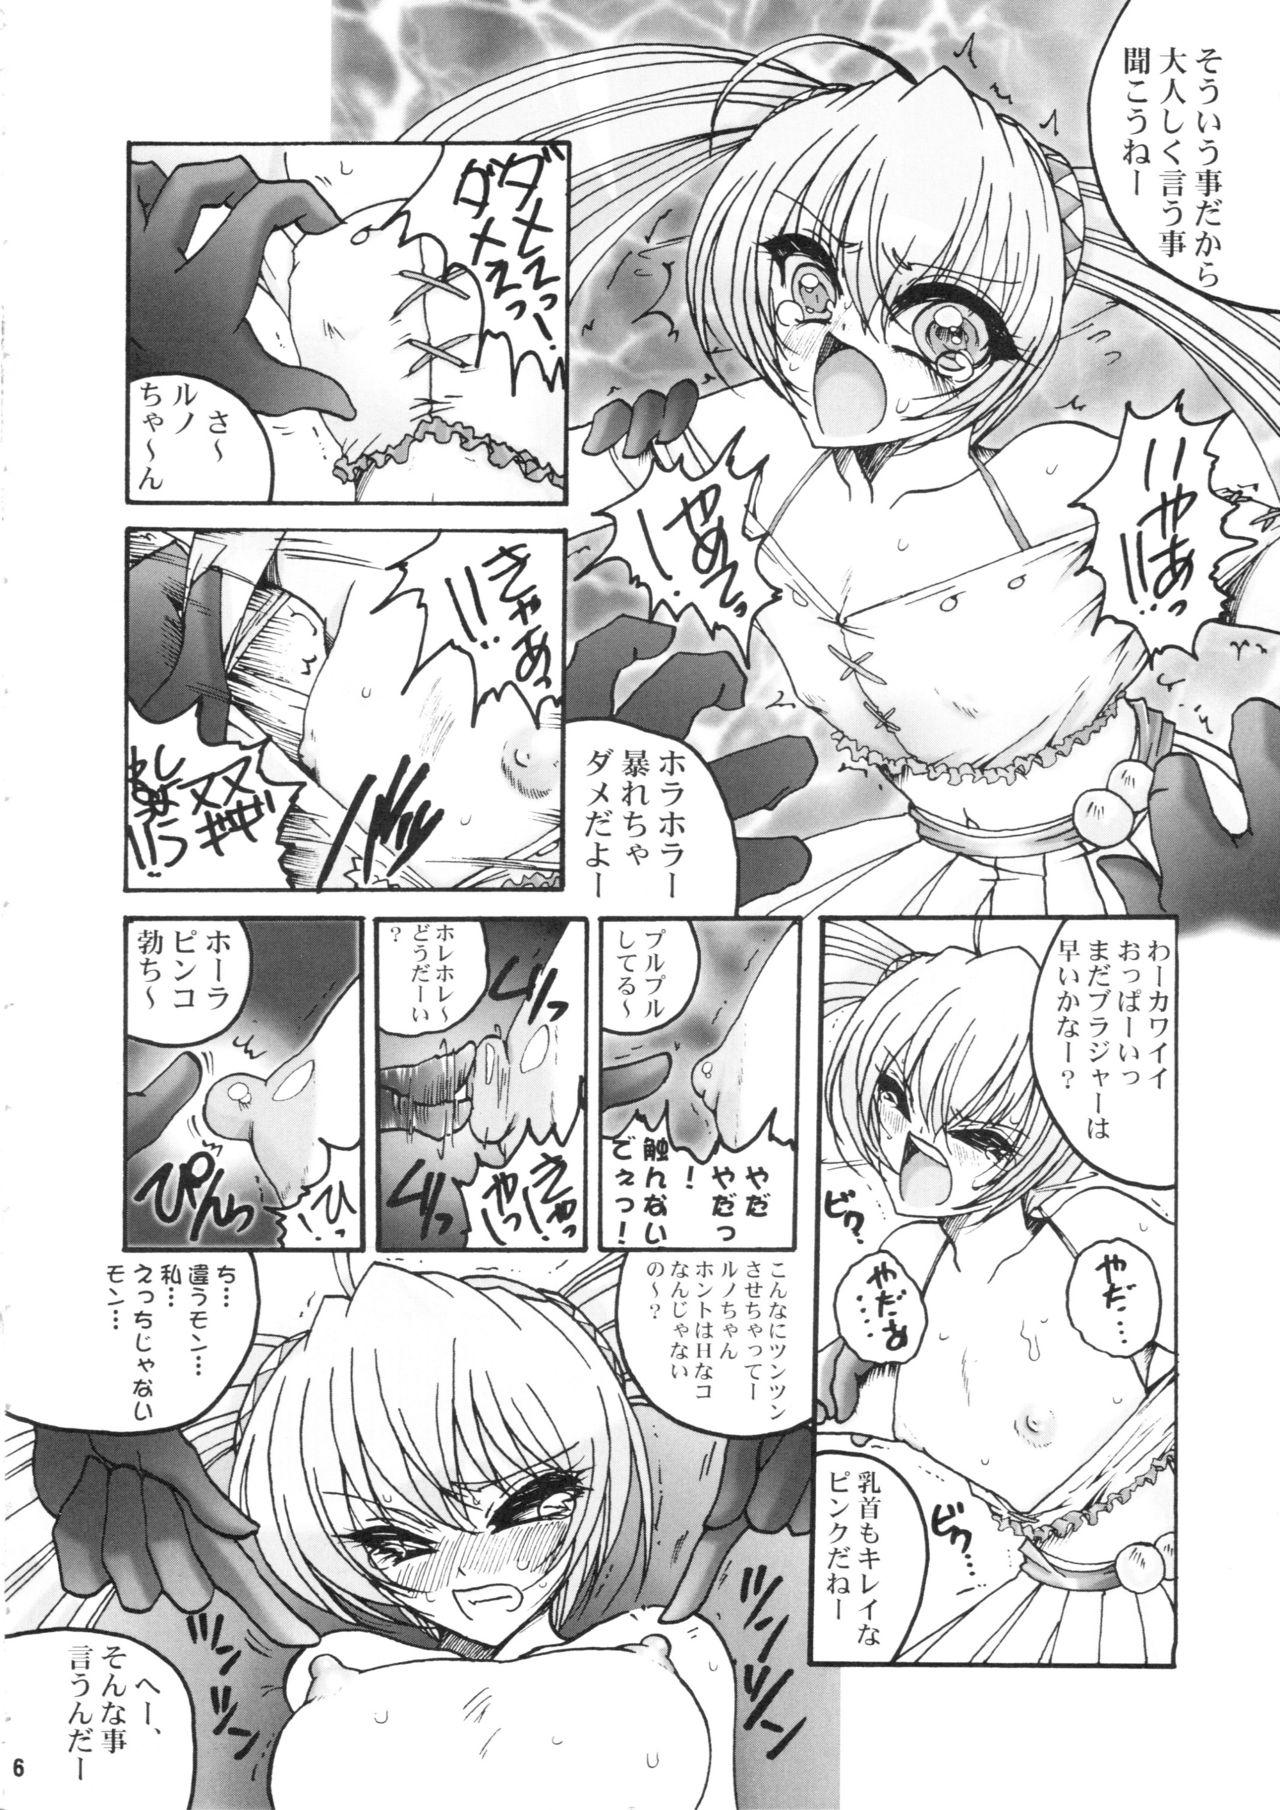 Hidden Premier no Soukutsu - Bakugan Body - Page 5